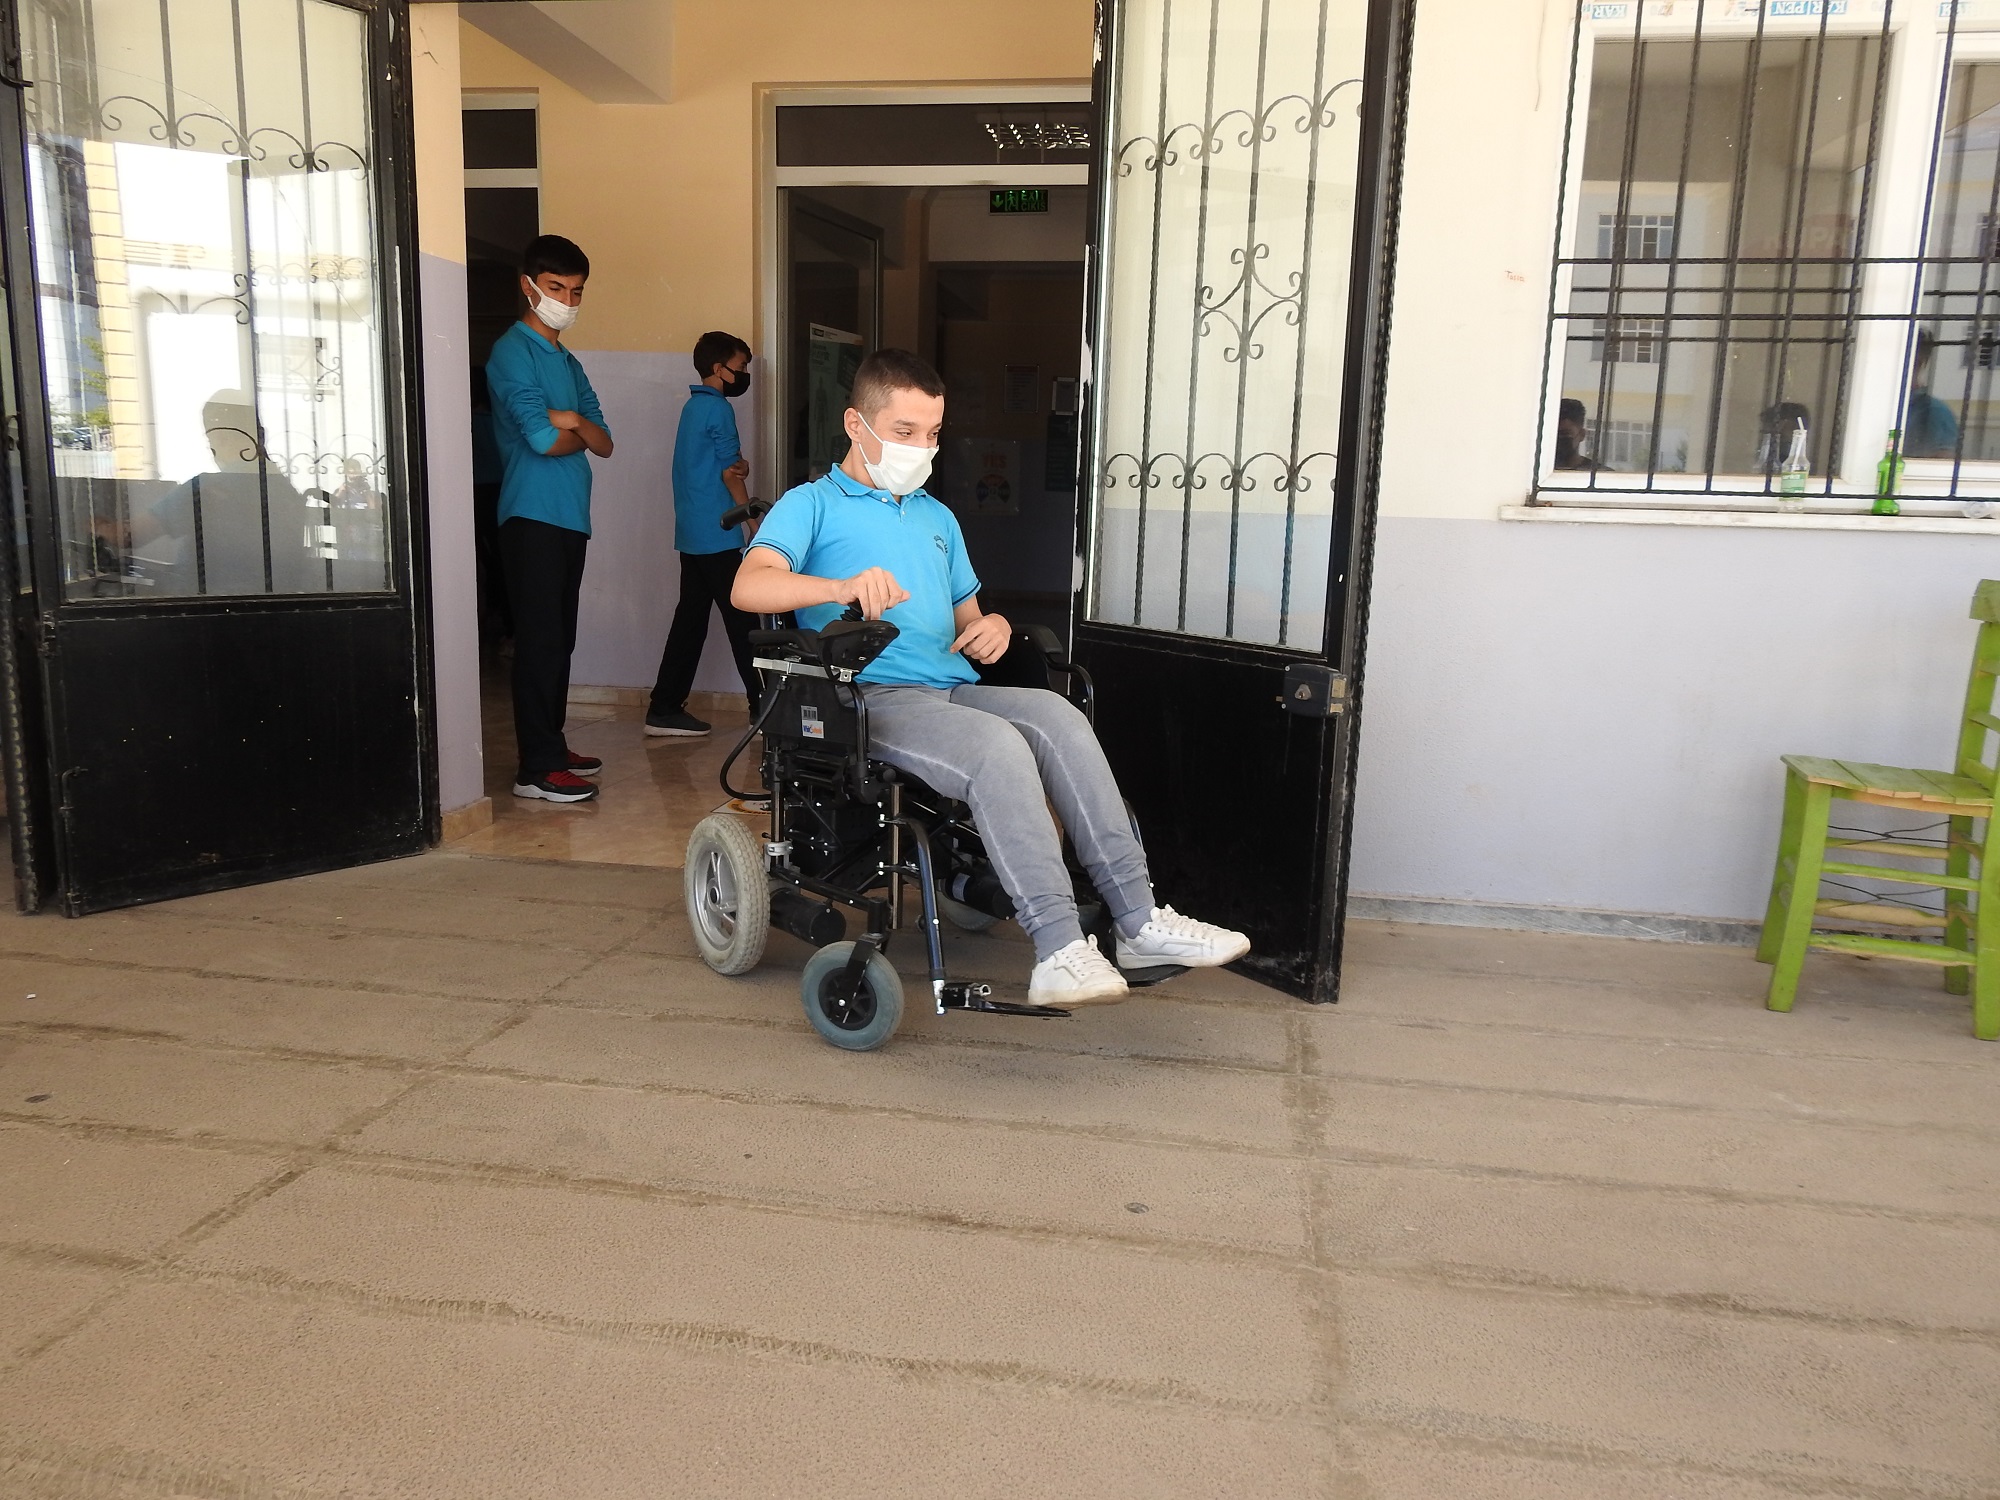 Başkan Şahin, Engelli Bireyin Akülü Sandalye İsteğine Kayıtsız Kalmadı